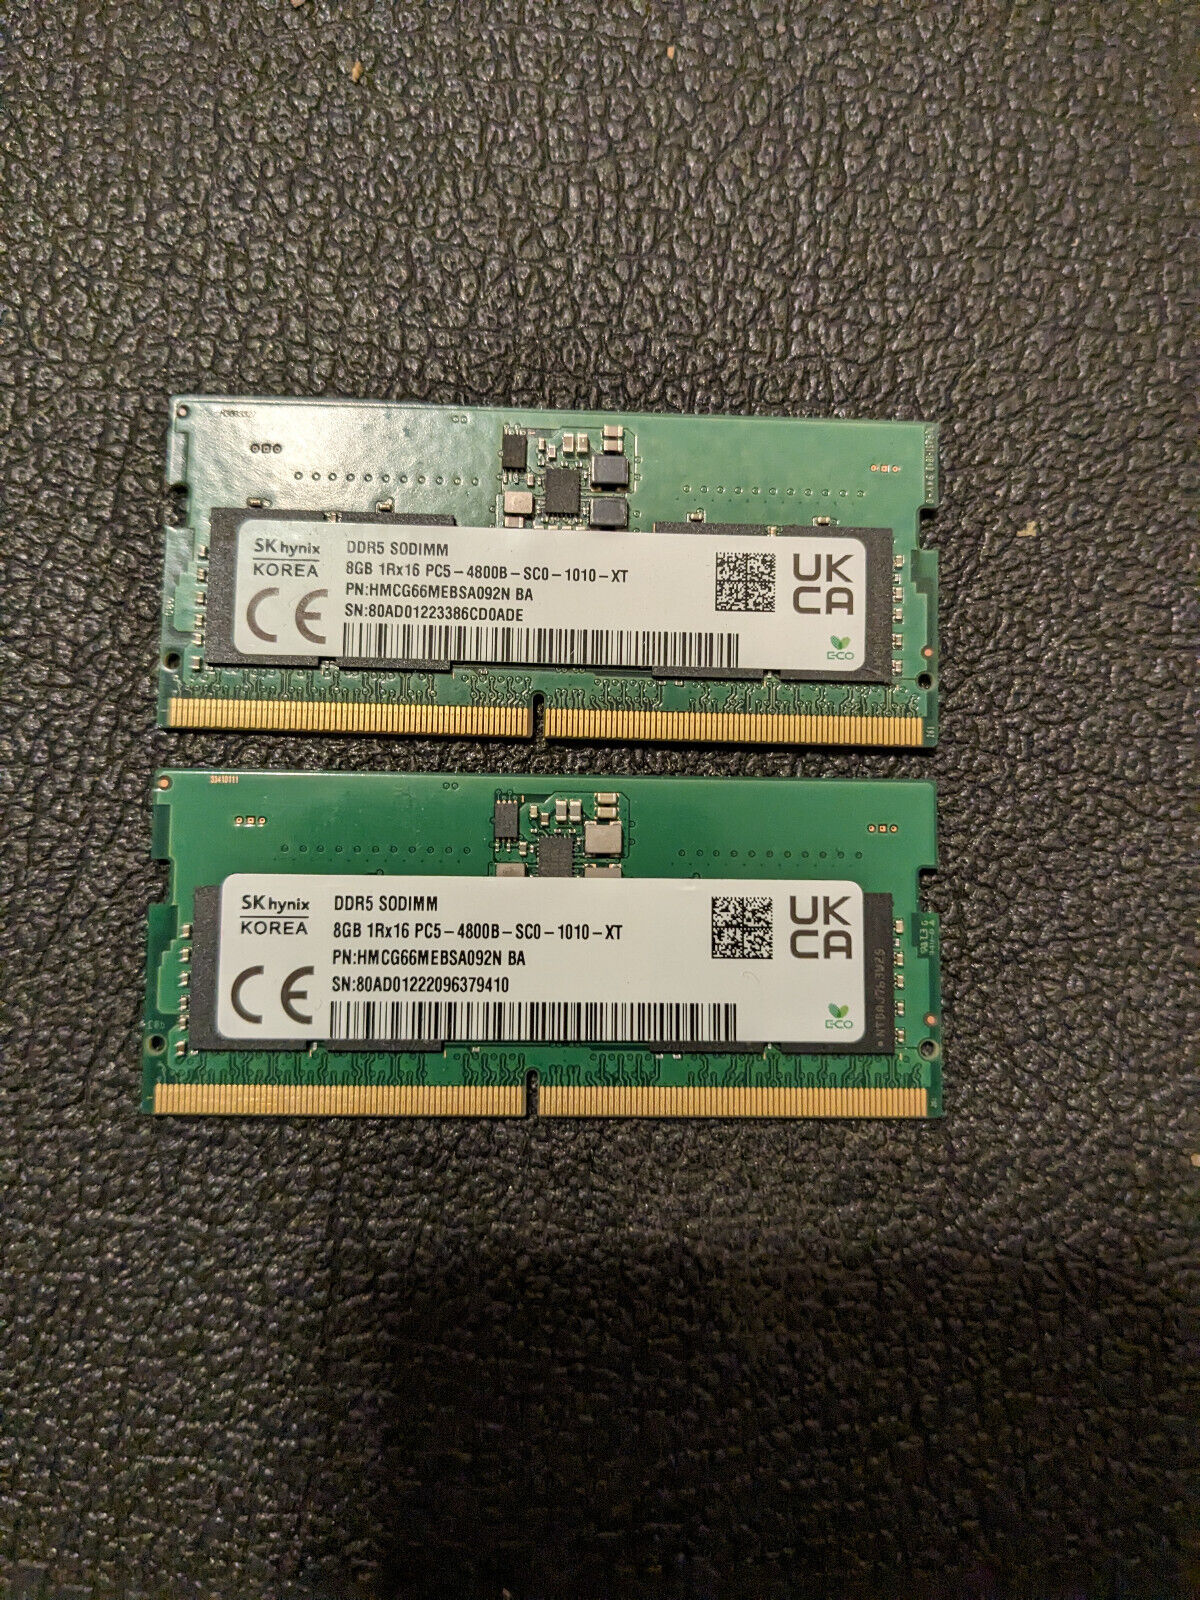 NEW PULL SK Hynix 16GB Kit(2x8GB) PC5-4800B DDR5 SODIMM Memory-HMCG66MEBSA092N B